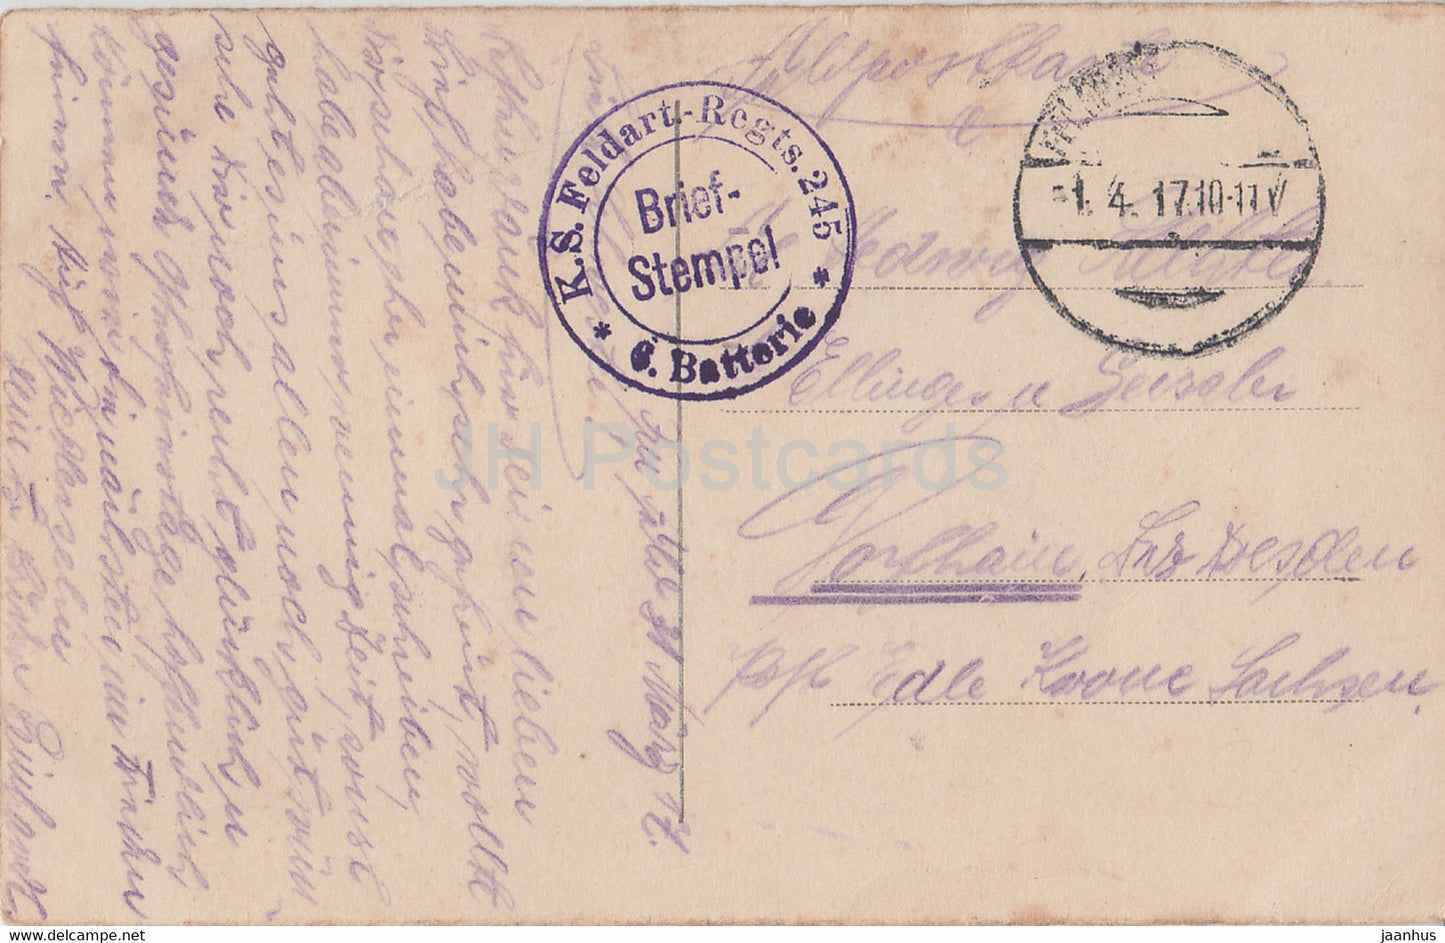 Warschau - Warszawa - Rathaus - Ratusz - Rathaus - KS Feldart Regts - Feldpost - alte Postkarte - 1917 - Polen - gebraucht